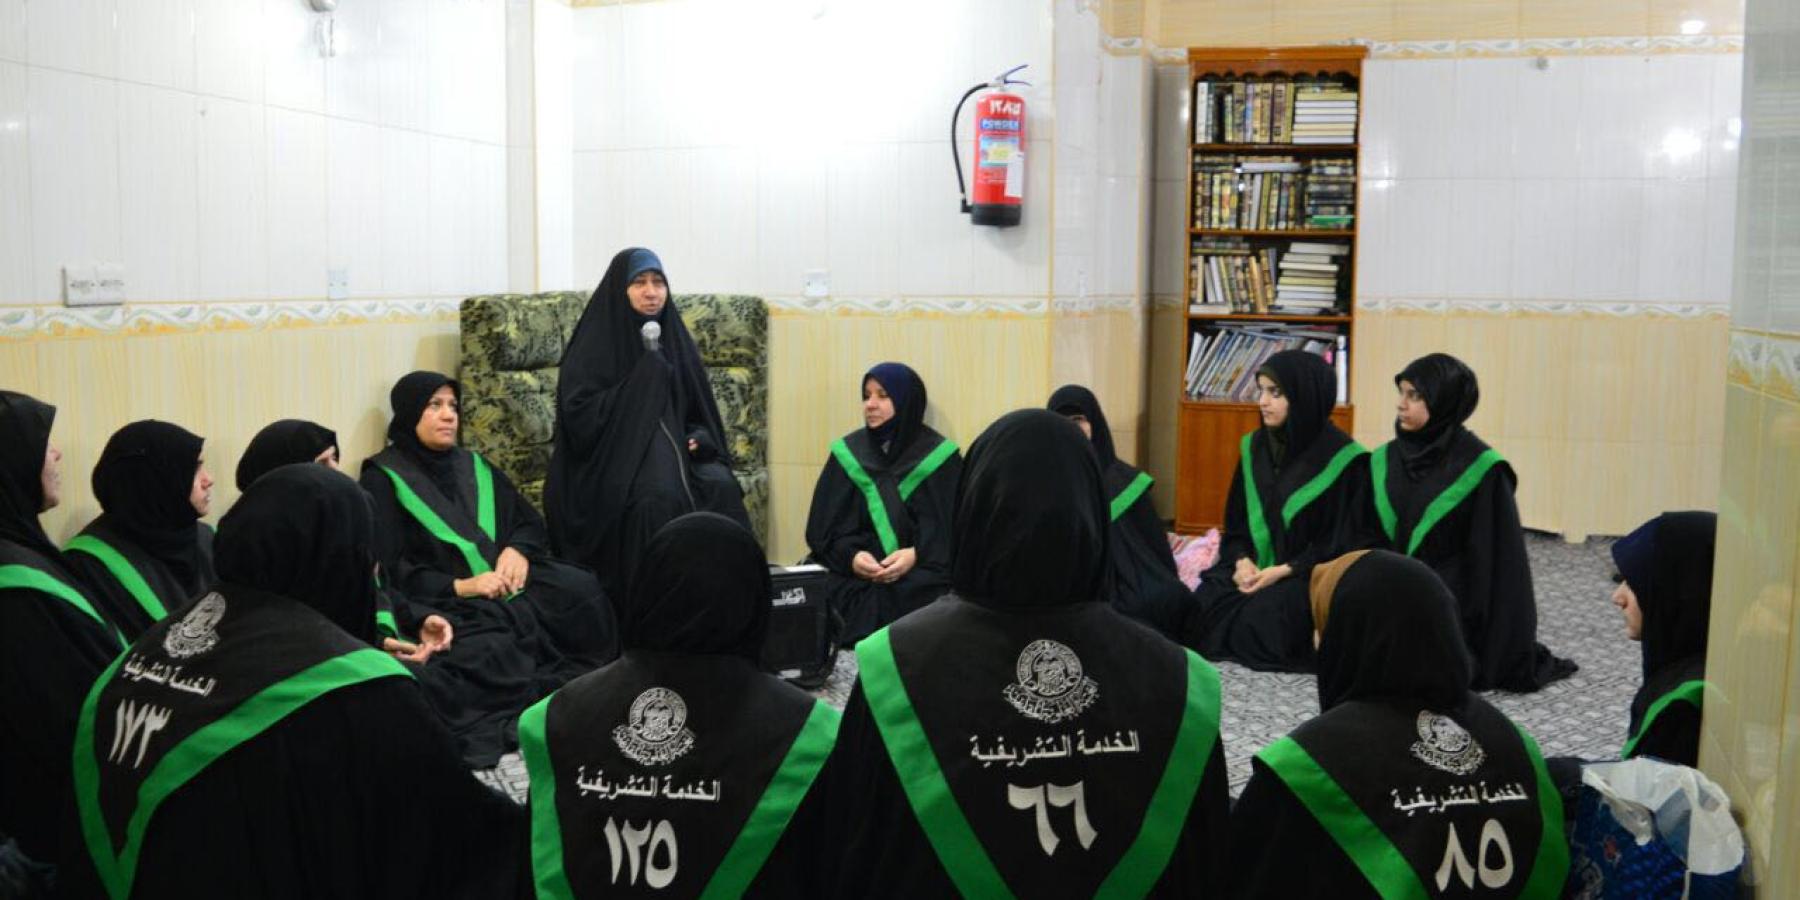 مركز فضة التابع الى قسم الشؤون النسوية في العتبة العلوية يستقبل اكثر من ١٠٠٠ متطوعة خلال شهر رمضان المبارك وأيام عيد الفطر